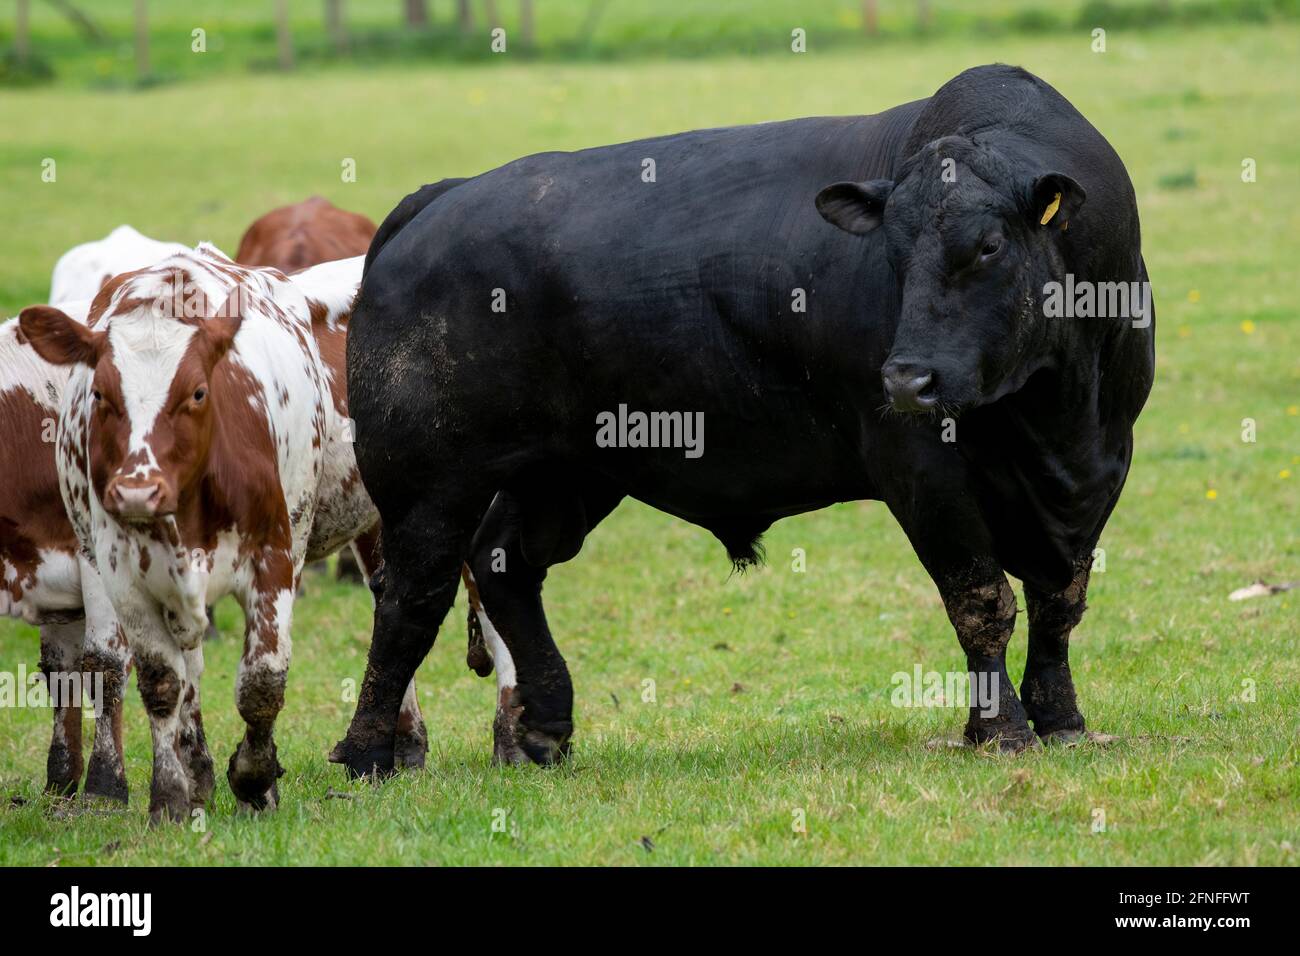 Doppelt so groß: Ein Aberdeen Angus Beef Bull neben einer Ayreshire-Kuh, Beningbrough, North Yorkshire, Großbritannien Stockfoto